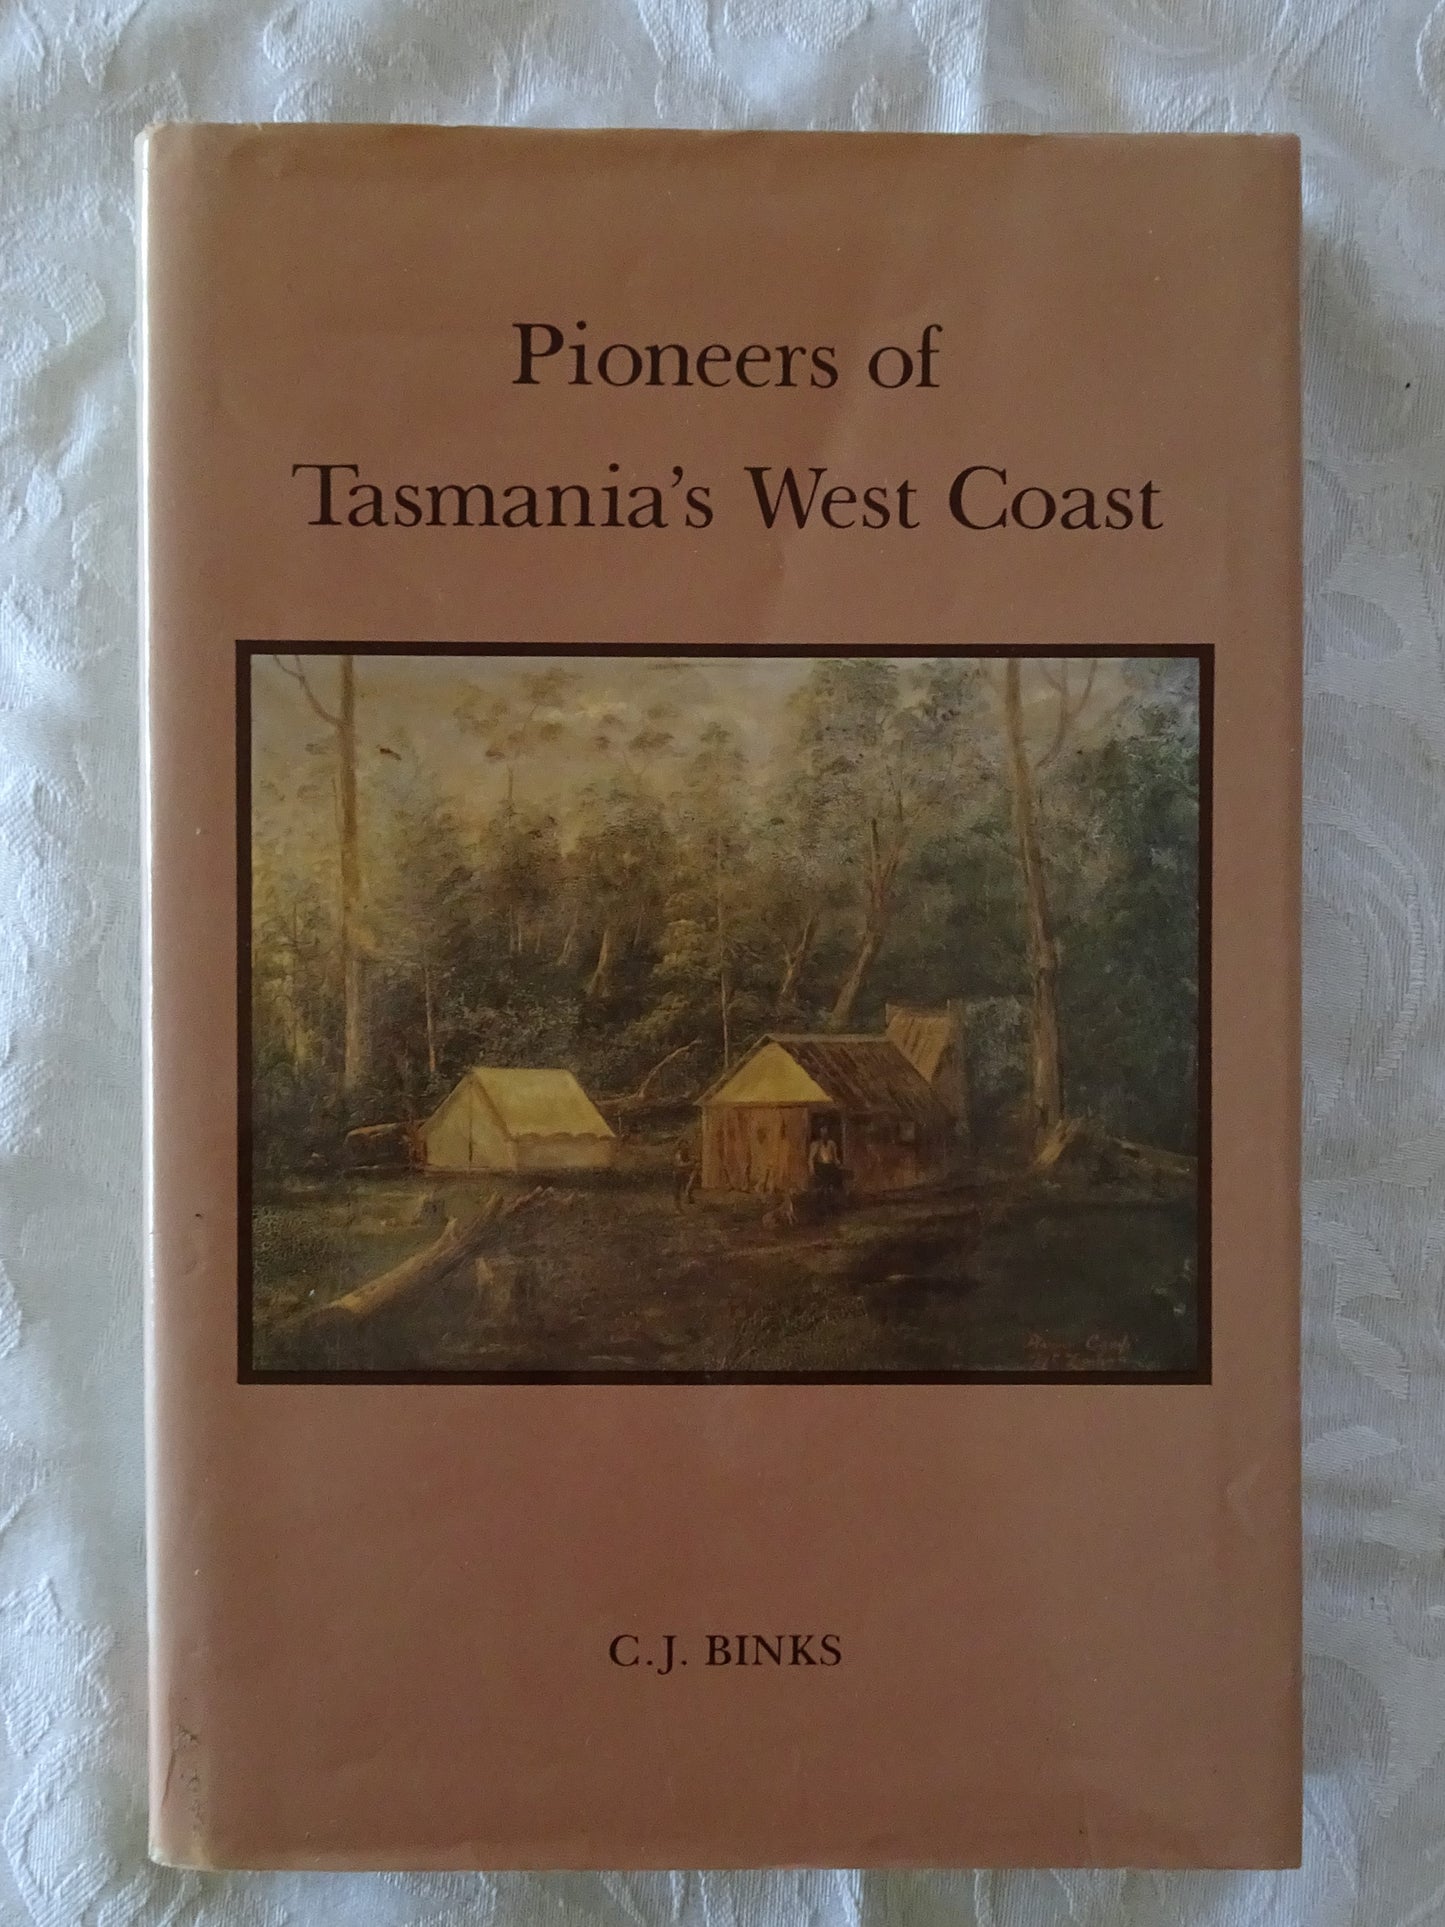 Pioneers of Tasmania's West Coast by C. J. Binks